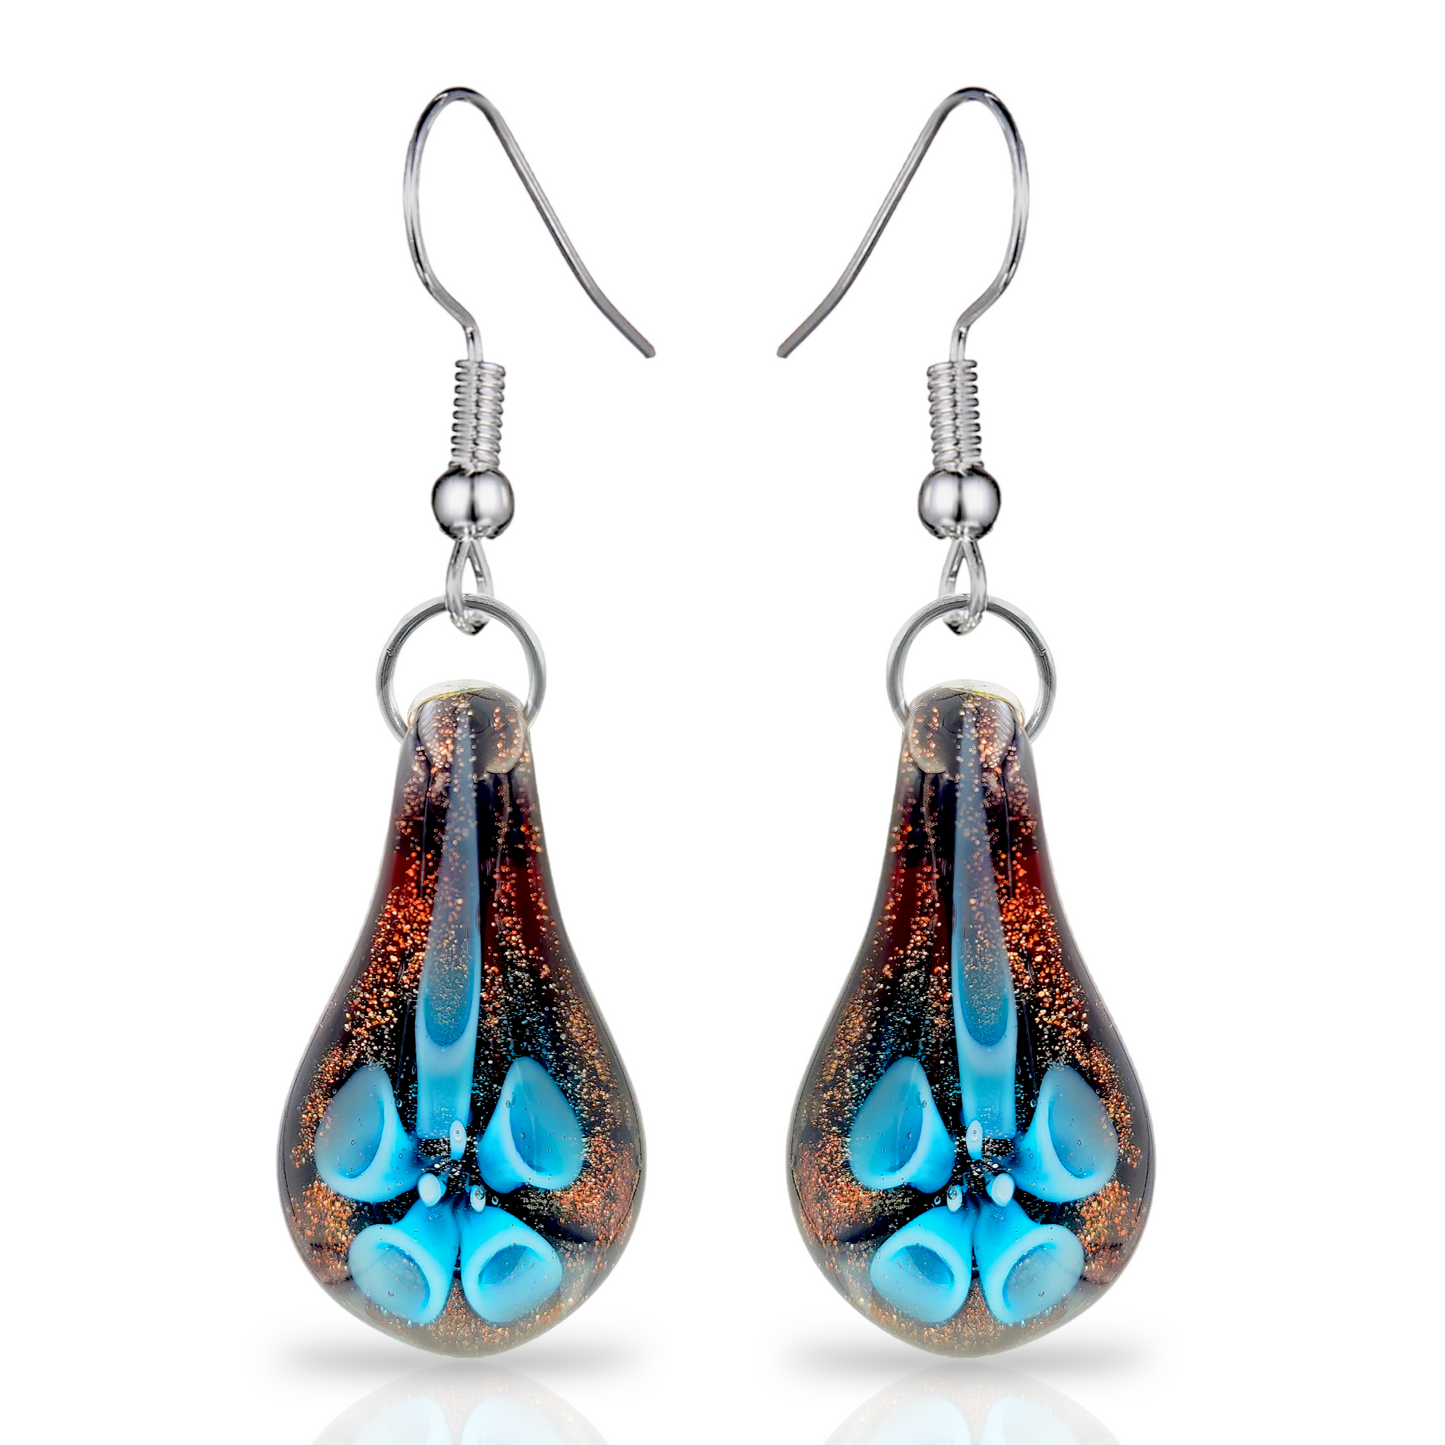 Besheek Handmade Murano-inspired Lily in Teardrop Fused Glass Dangle Earrings | Hypoallergenic Boho Beach Gala Wedding Style Fashion Earrings